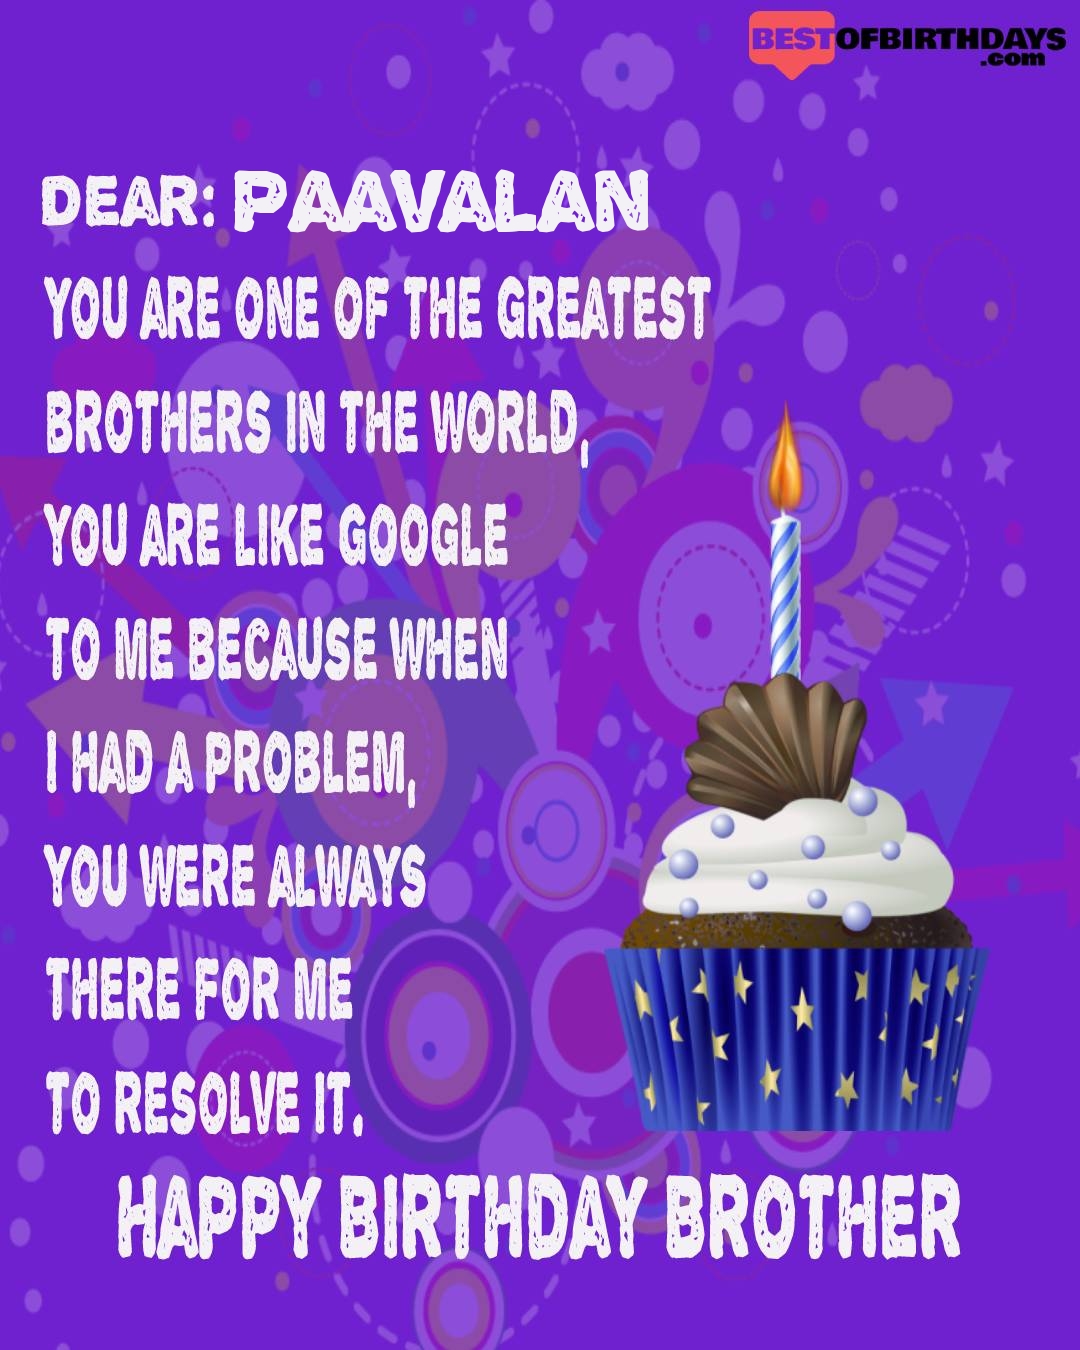 Happy birthday paavalan bhai brother bro